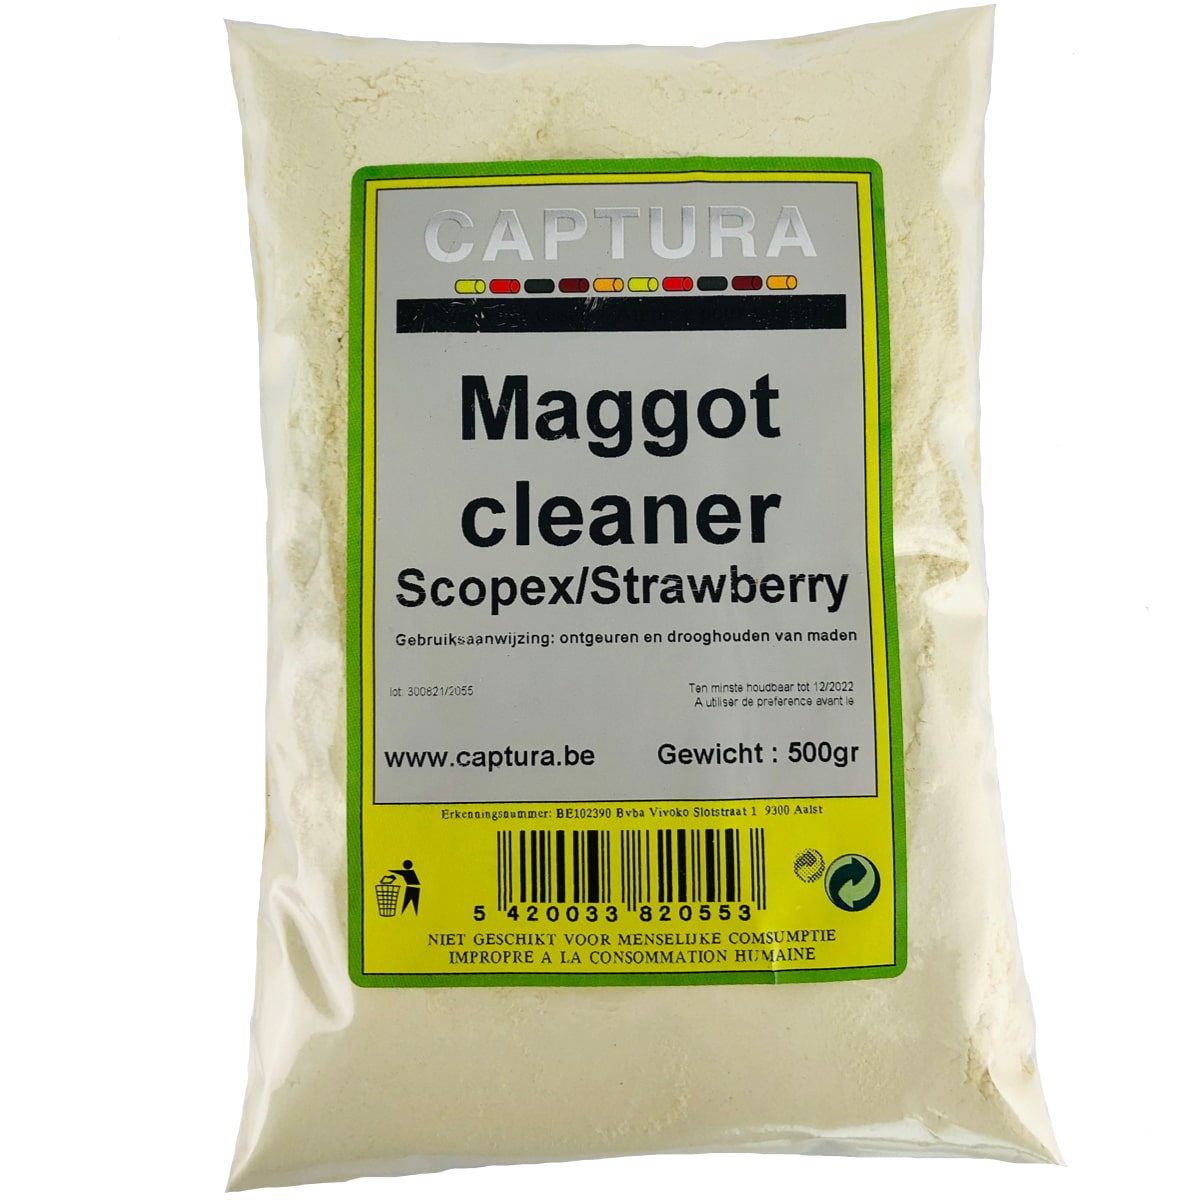 Captura maggot cleaner - madenreiniger 500g scopex/strawberry